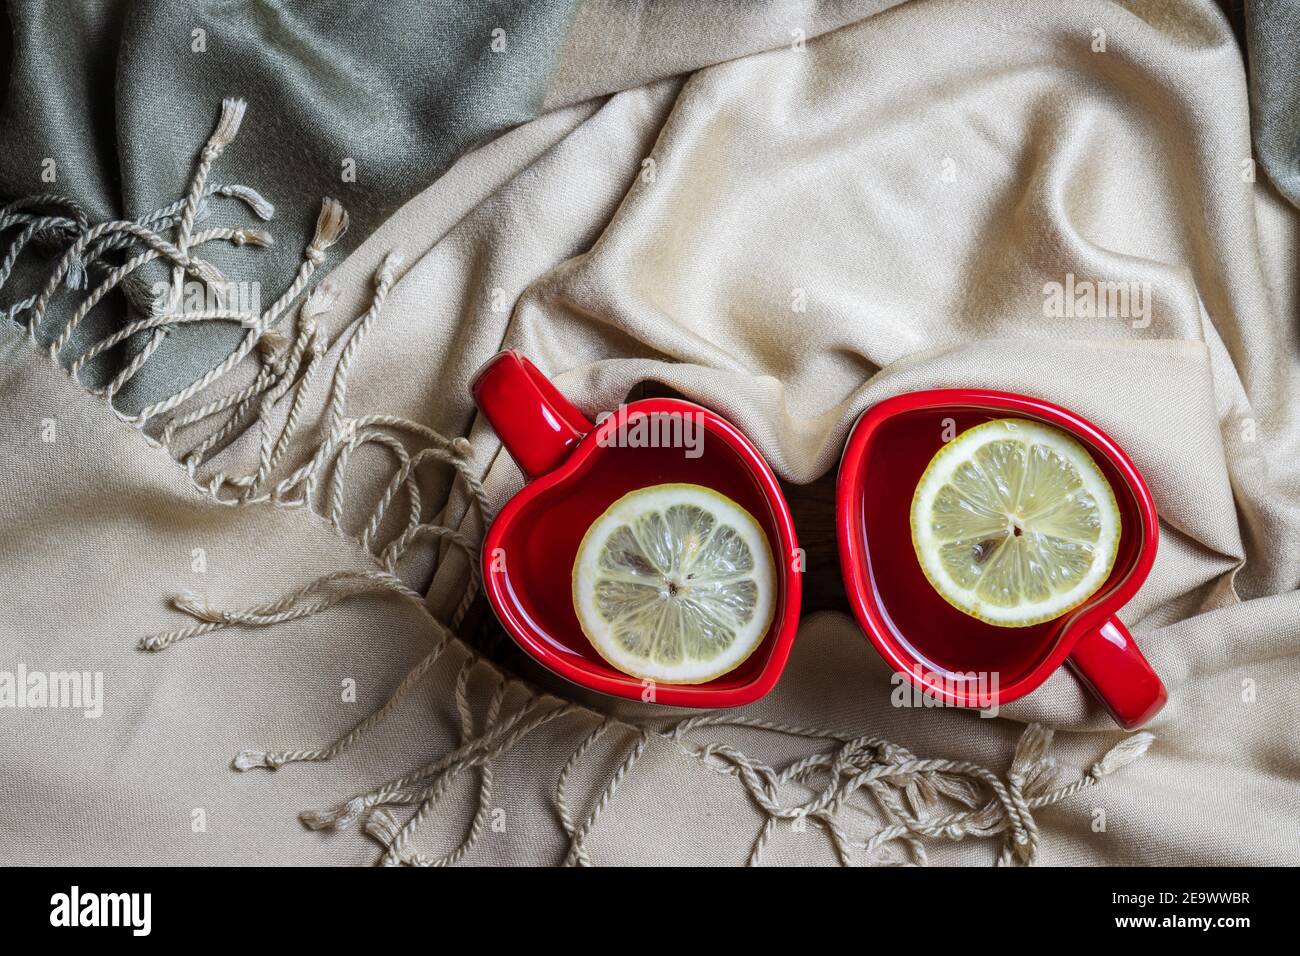 Tazas de té y bufanda en forma de corazón rojo, símbolo del día de San Valentín. Dos bebidas calientes y platos en una acogedora casa. Foto de stock